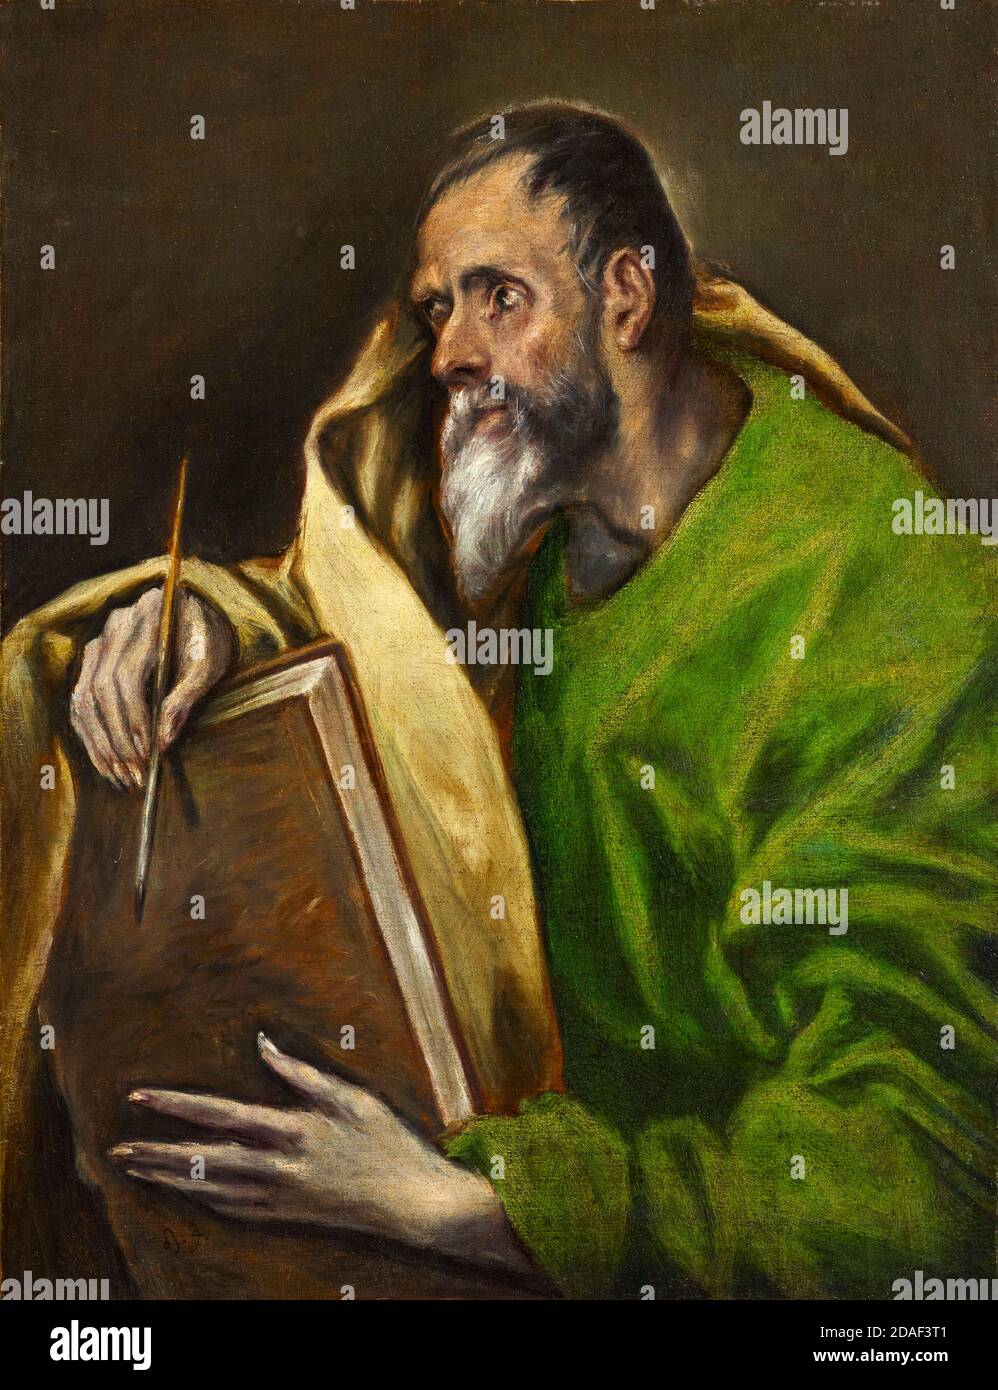 St Luke, peinture de l'atelier d'El Greco, vers 1610-1614 Banque D'Images